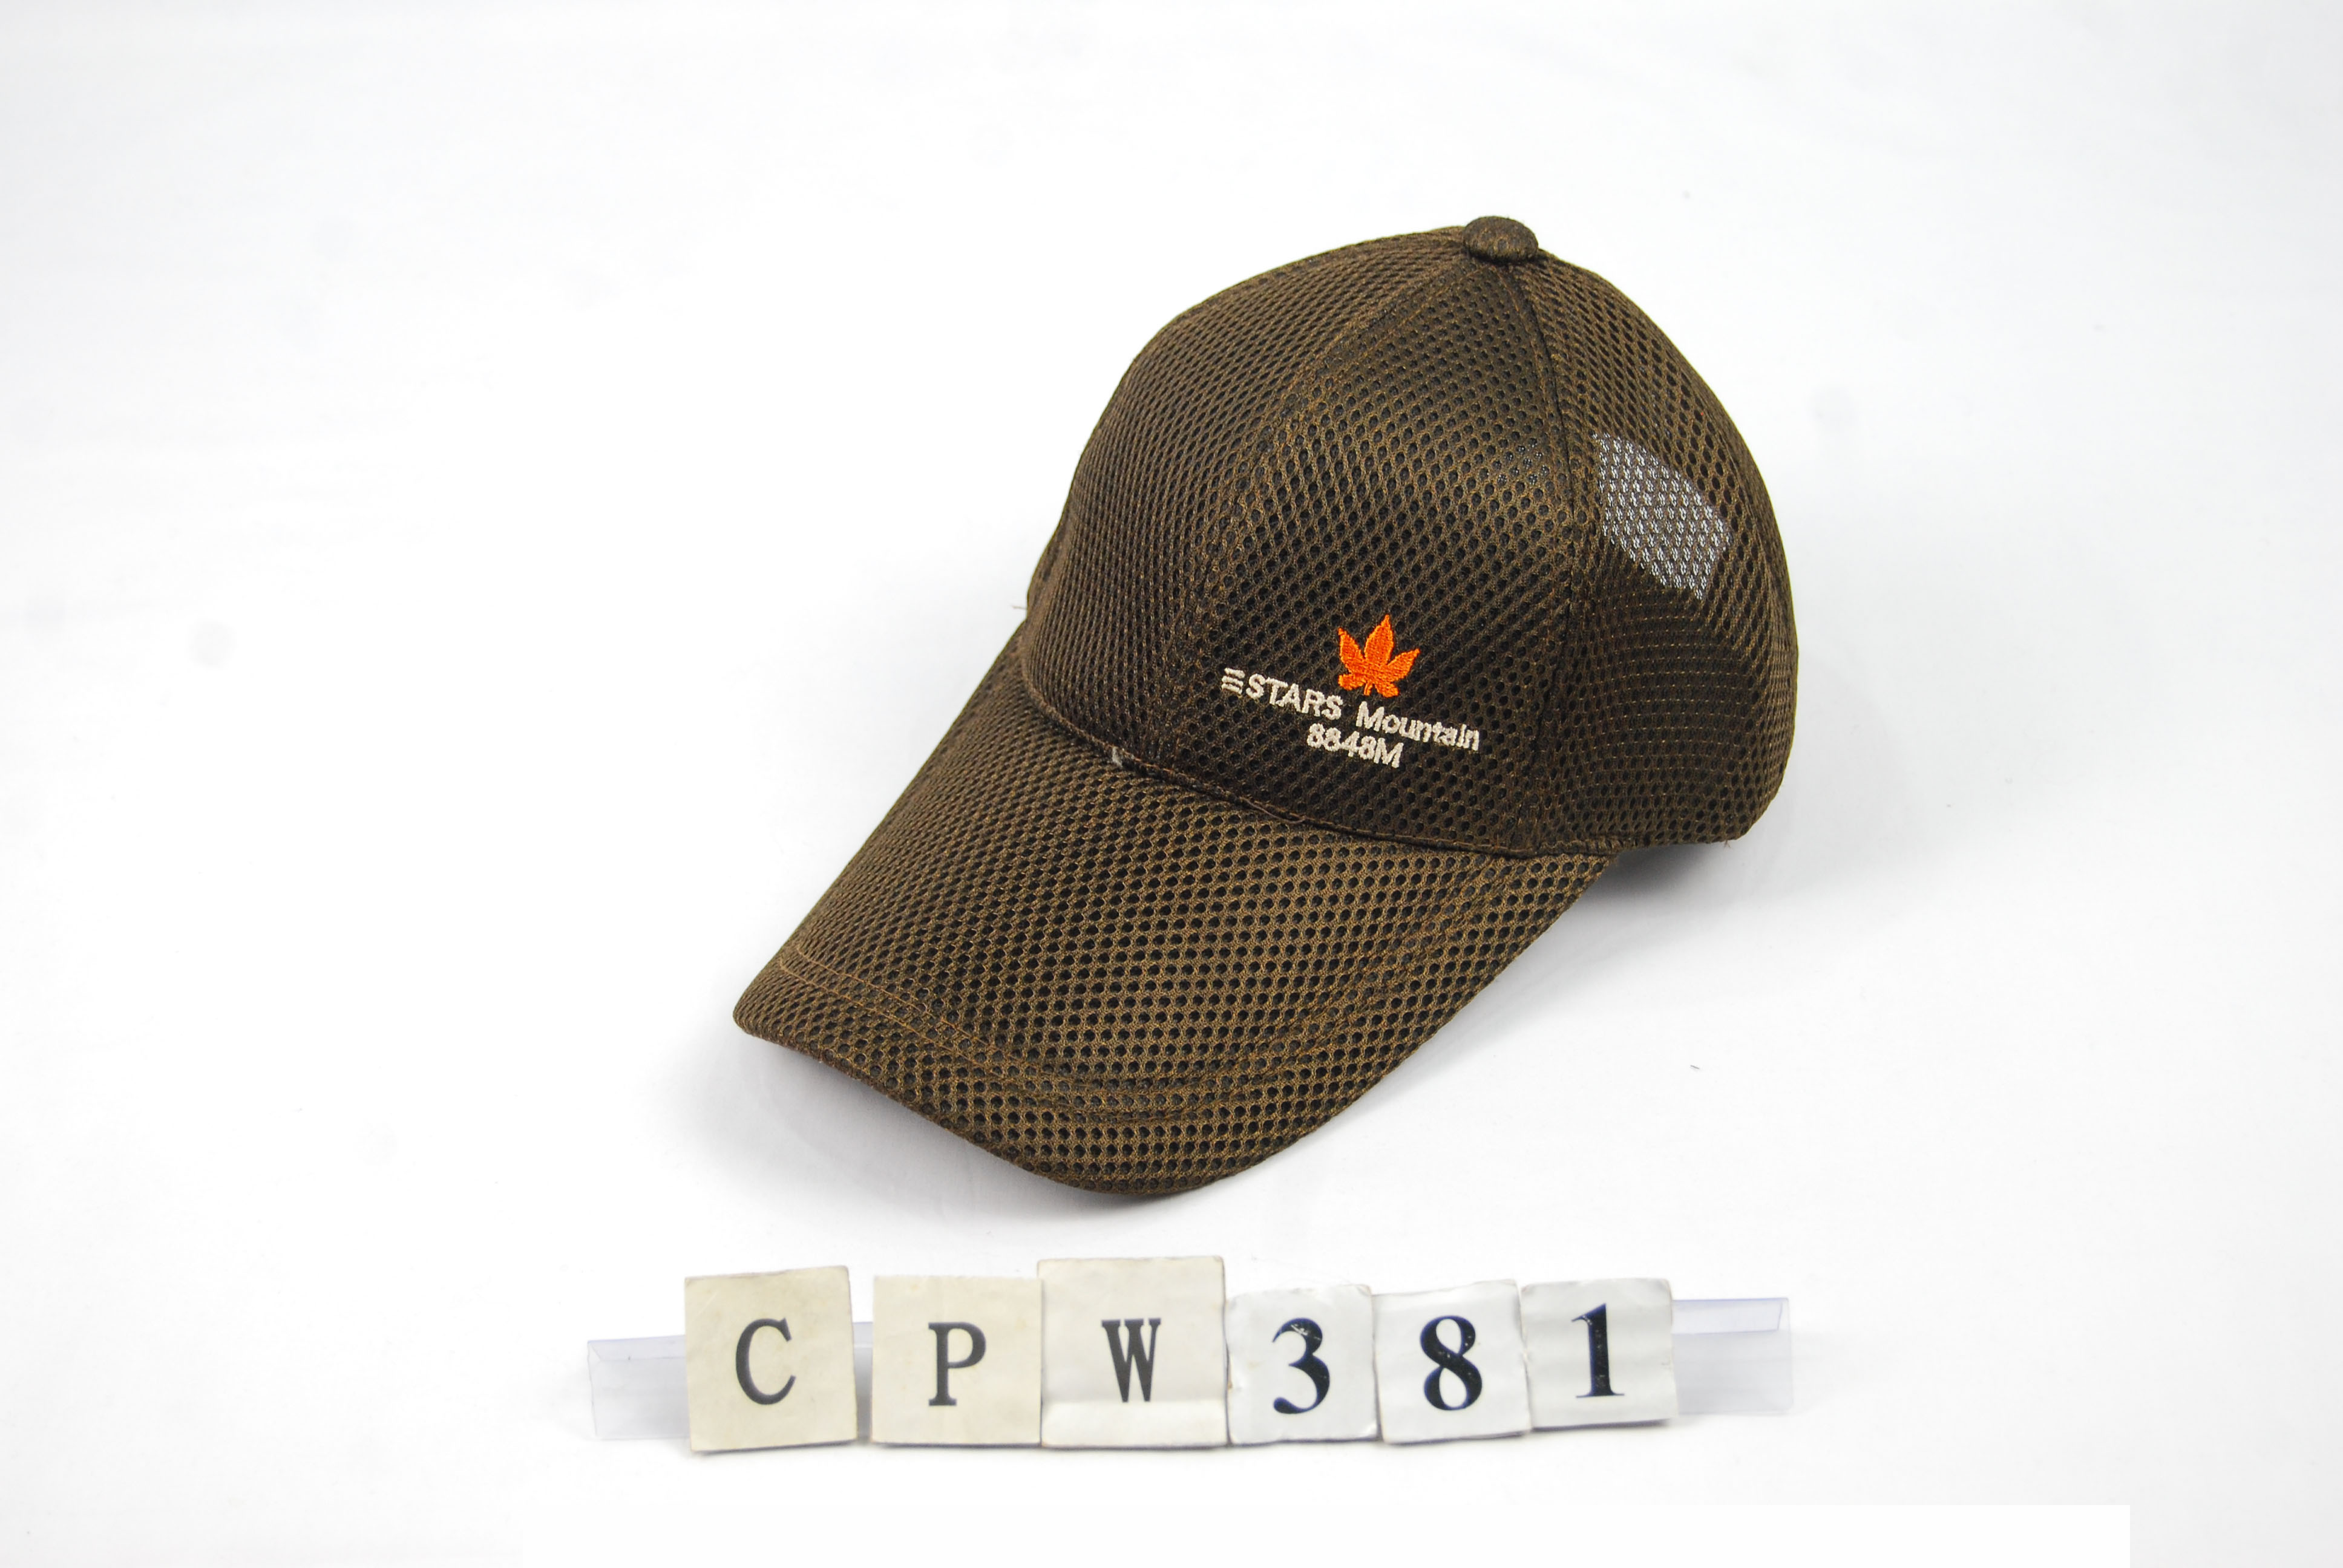 CPW381 素色網帽 側繡3D楓葉 三STARS MOUNTAIN 三星製帽